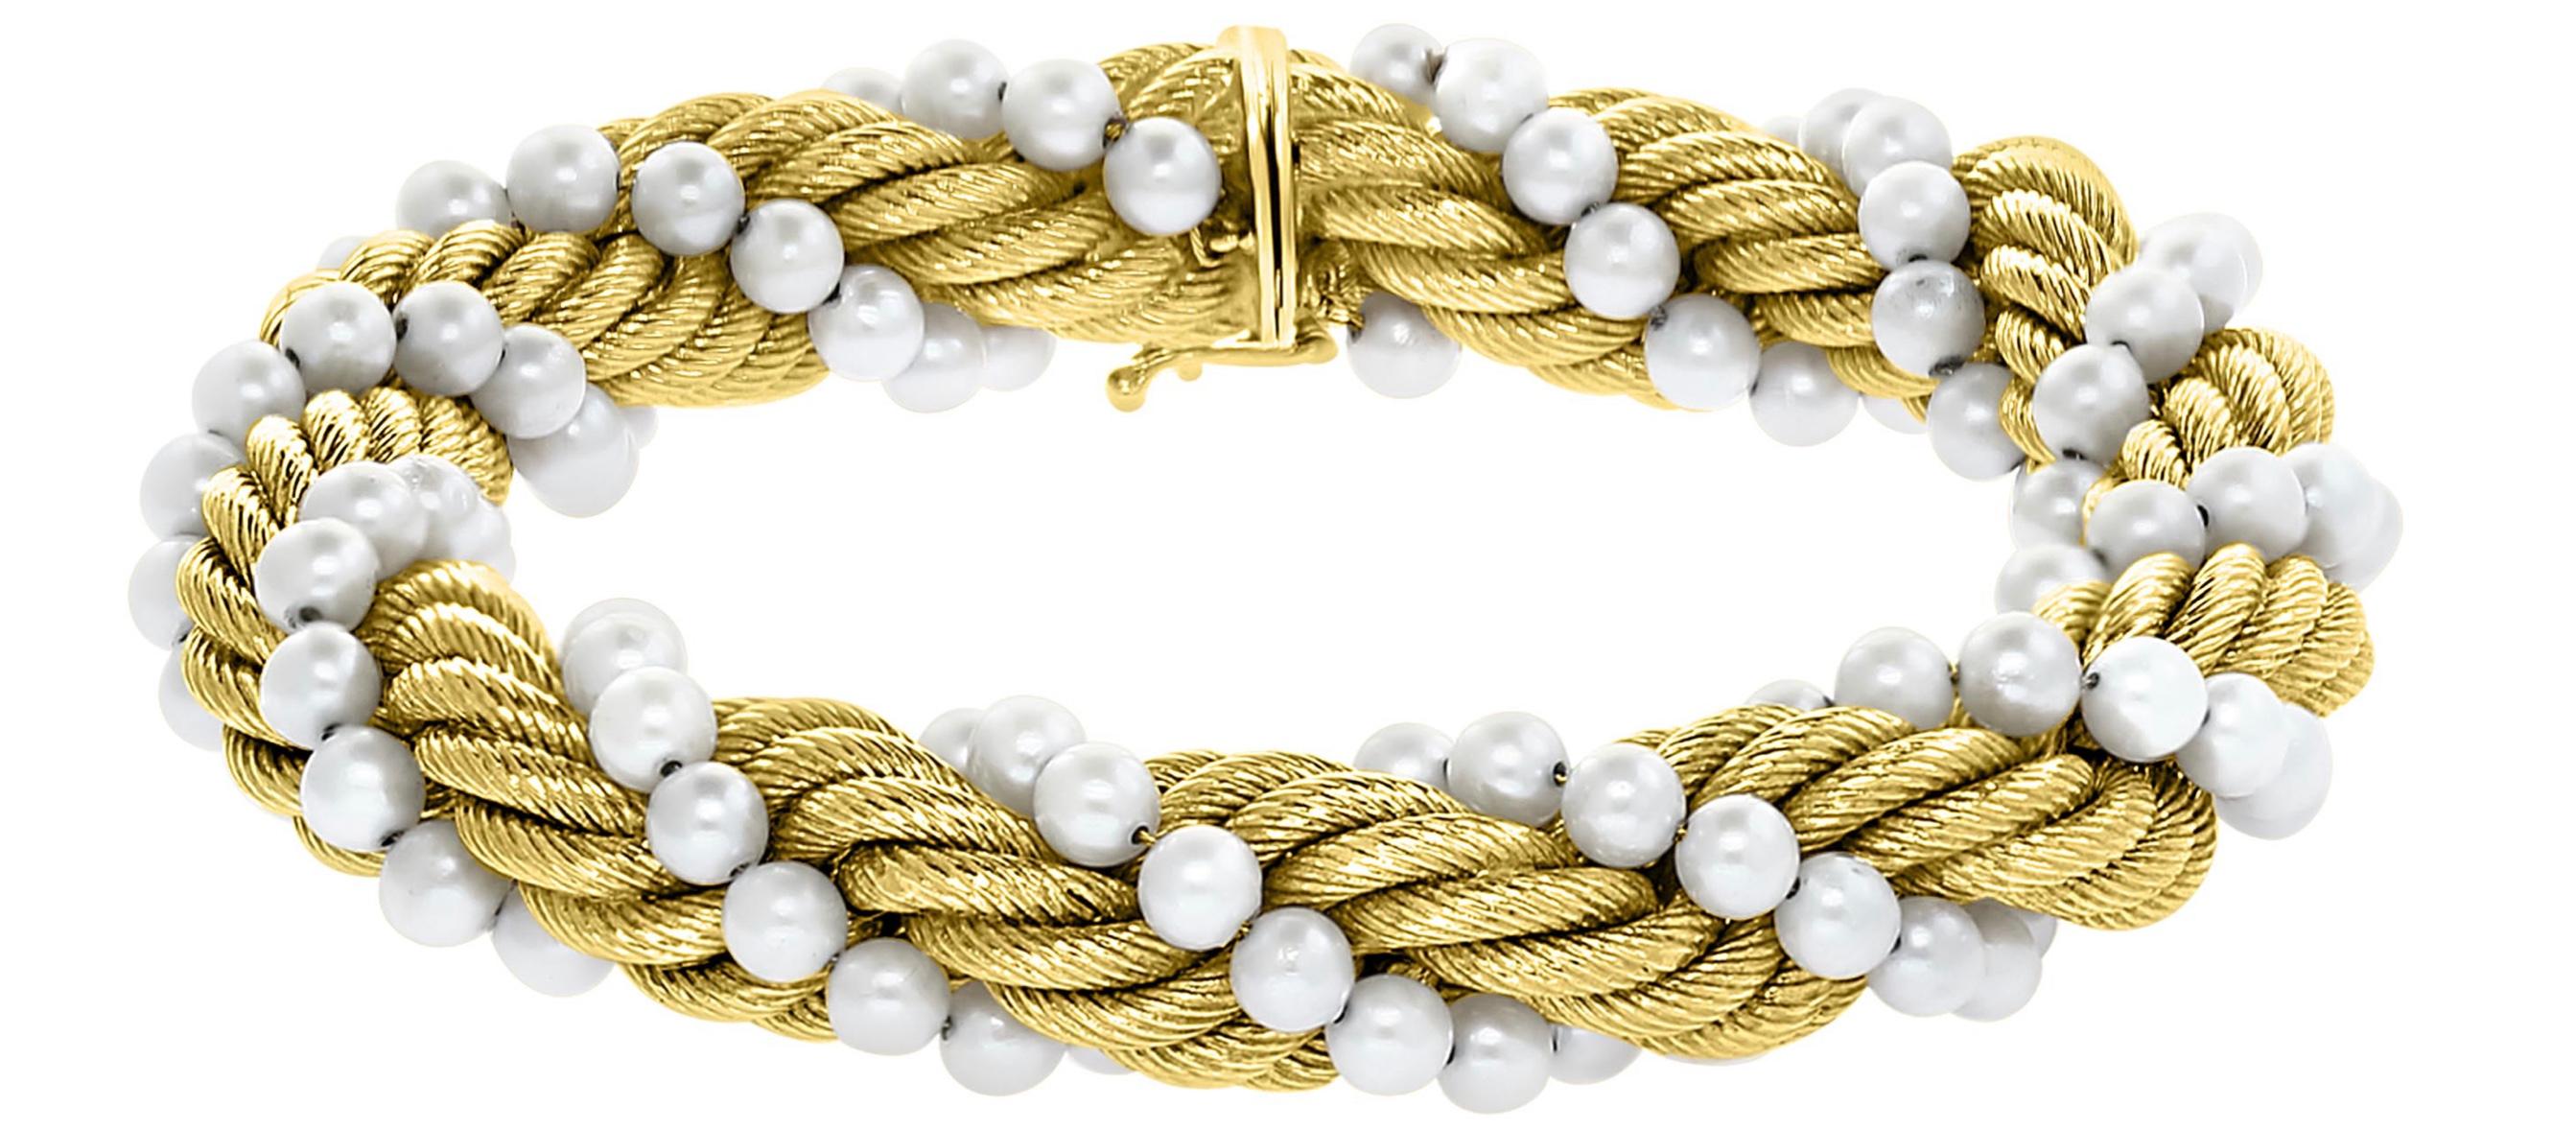 Bucherer - Ensemble collier et bracelet deux pièces  En or 18 carats  Or jaune et perles

Ce collier  Bracelet et bracelet assorti  Elles sont fabriquées en or 18 carats  Jaune  d'or . 
Des perles et une chaîne en or en forme de corde sont torsadées